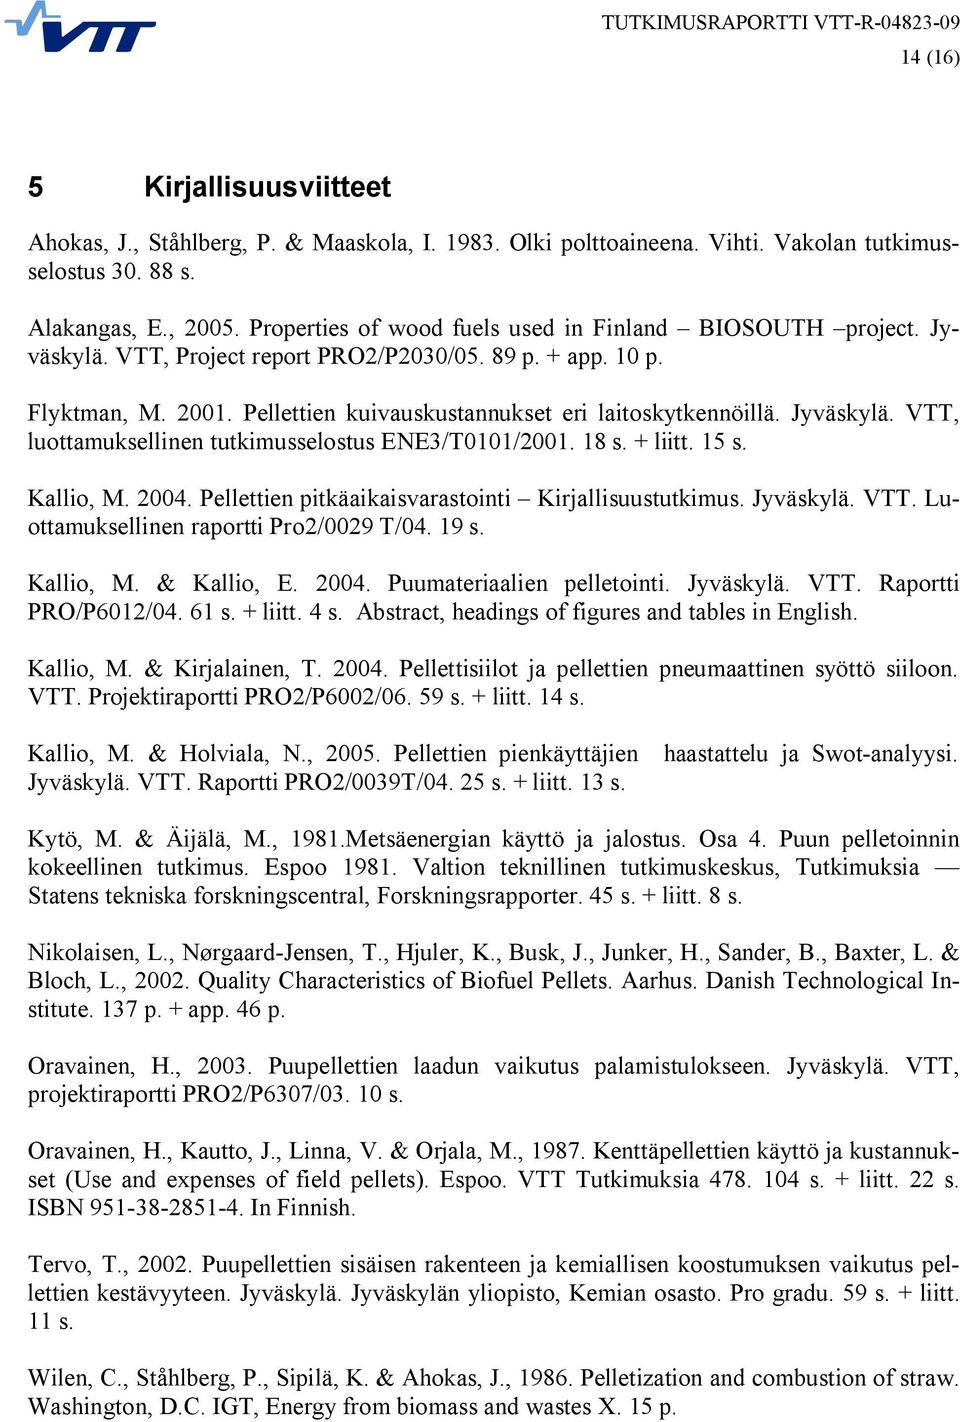 Jyväskylä. VTT, luottamuksellinen tutkimusselostus ENE3/T0101/2001. 18 s. + liitt. 15 s. Kallio, M. 2004. Pellettien pitkäaikaisvarastointi Kirjallisuustutkimus. Jyväskylä. VTT. Luottamuksellinen raportti Pro2/0029 T/04.